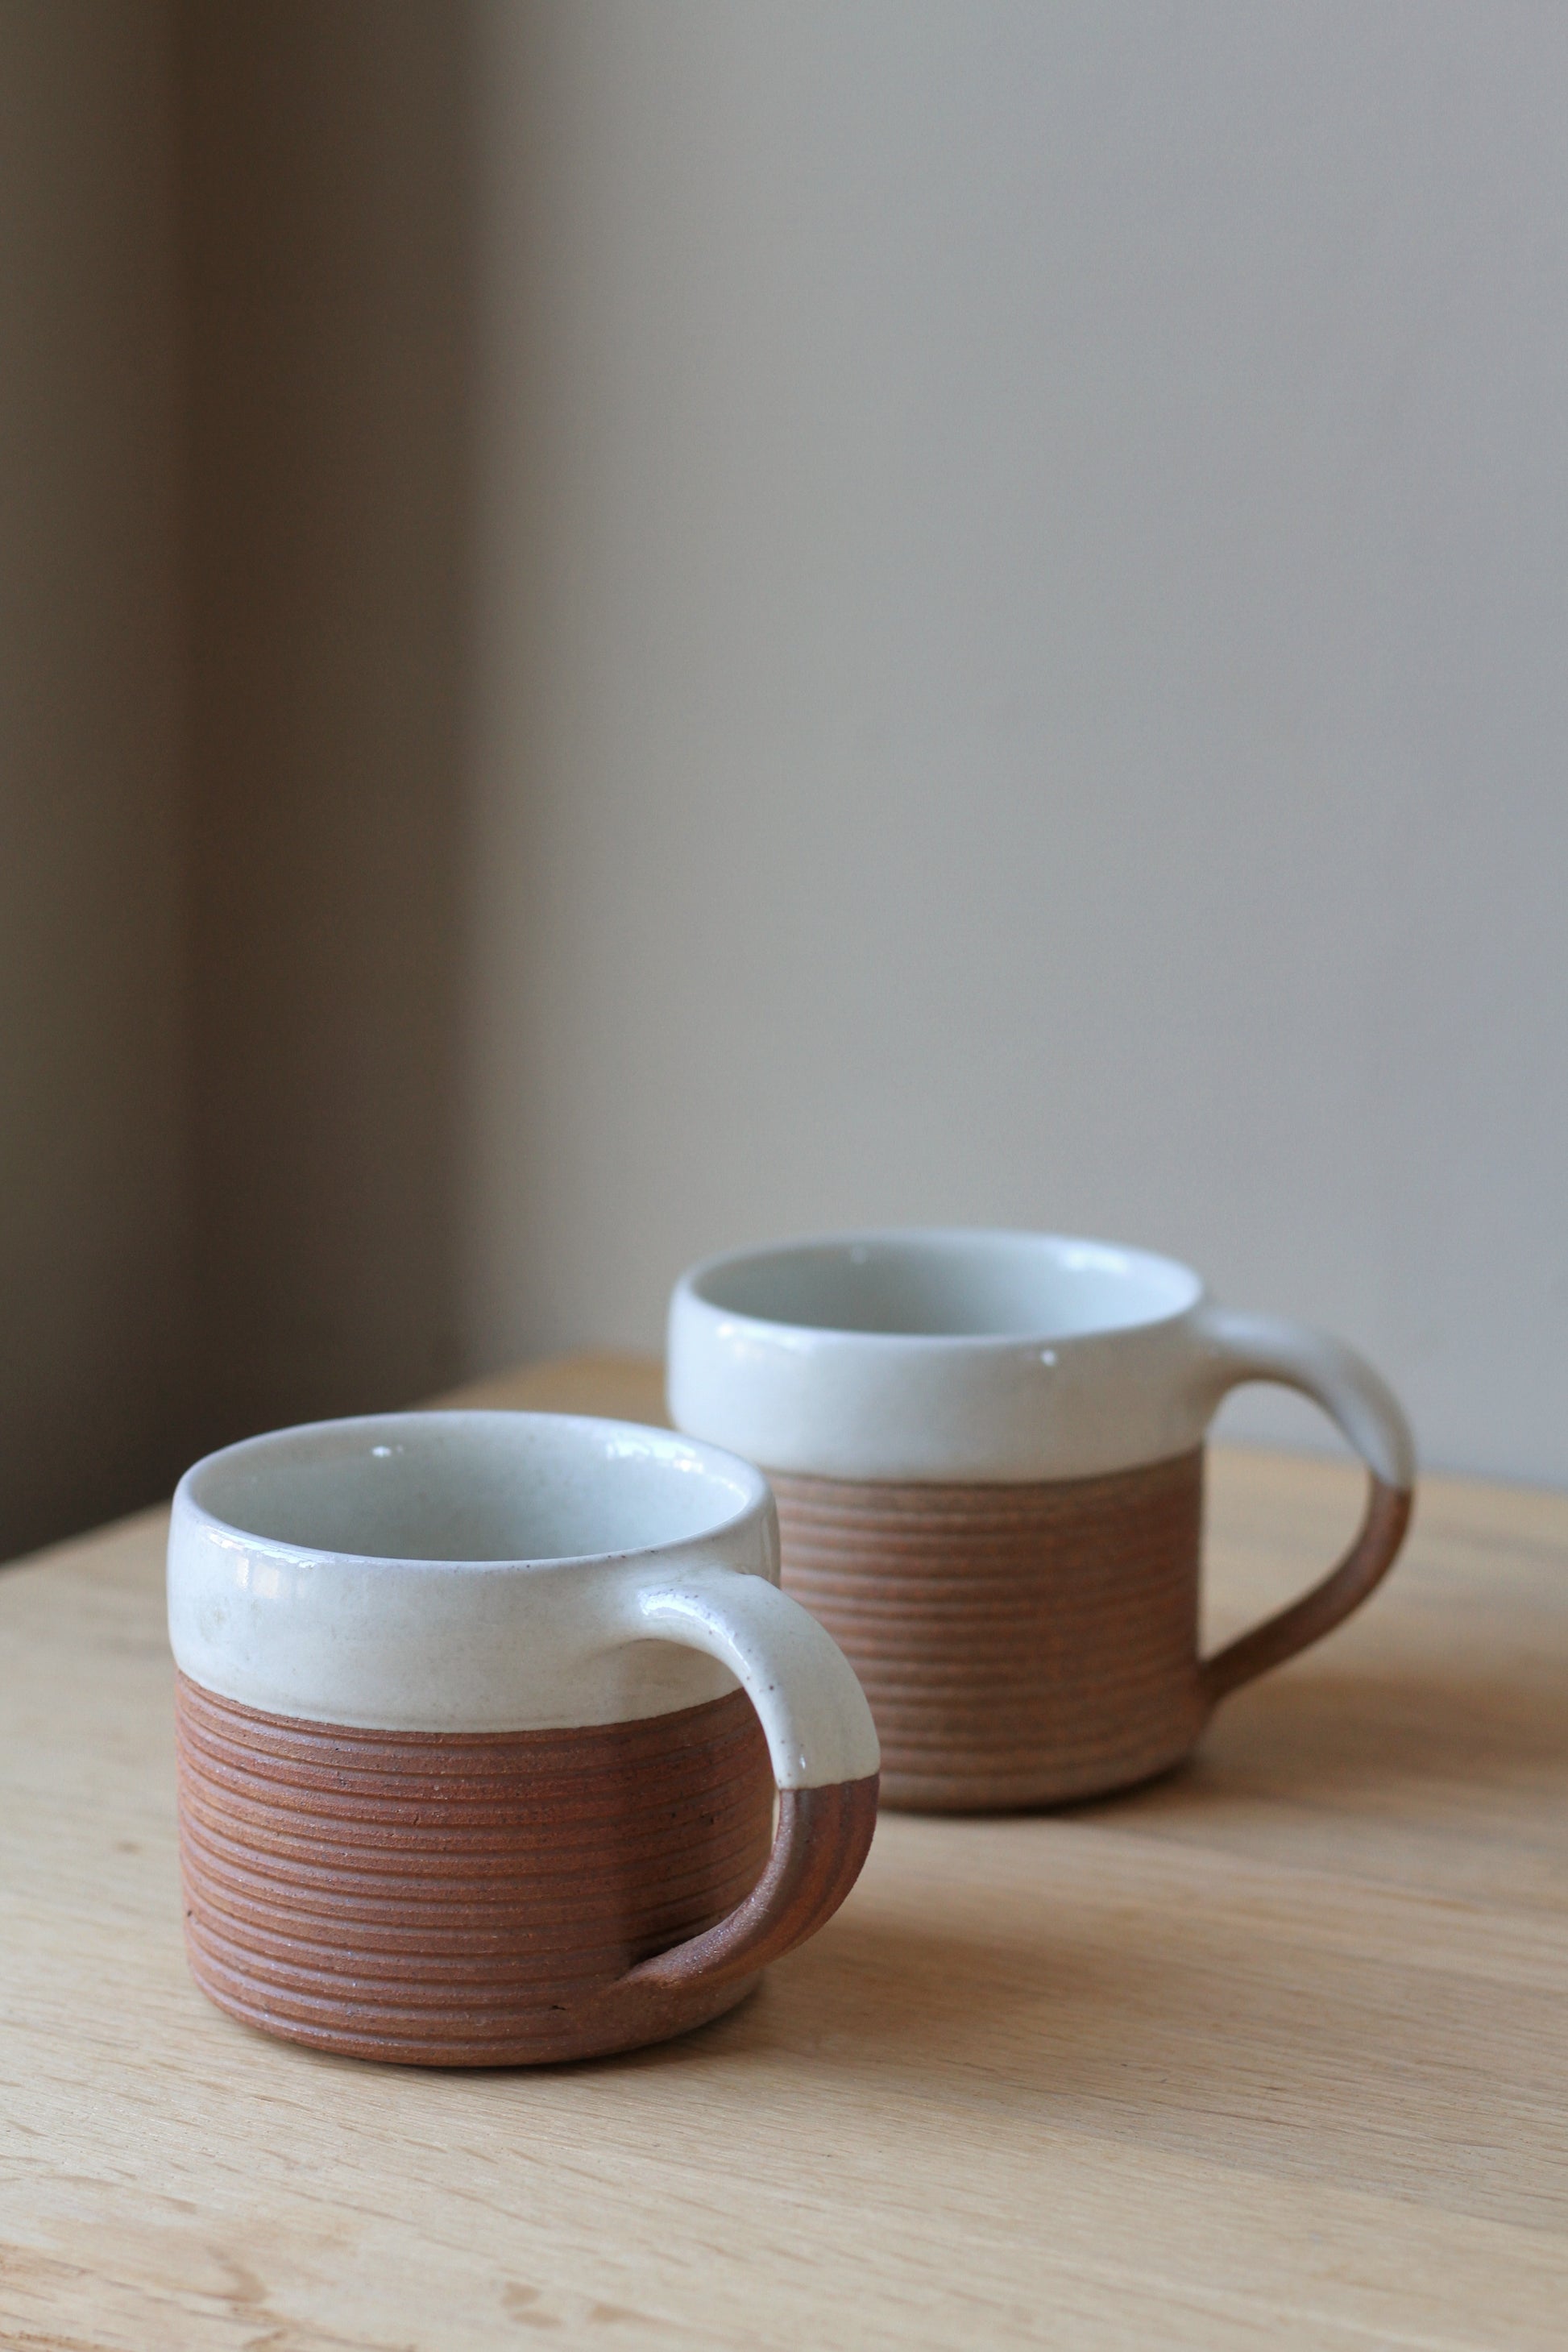 terradotta mug handmade with a white glaze rim